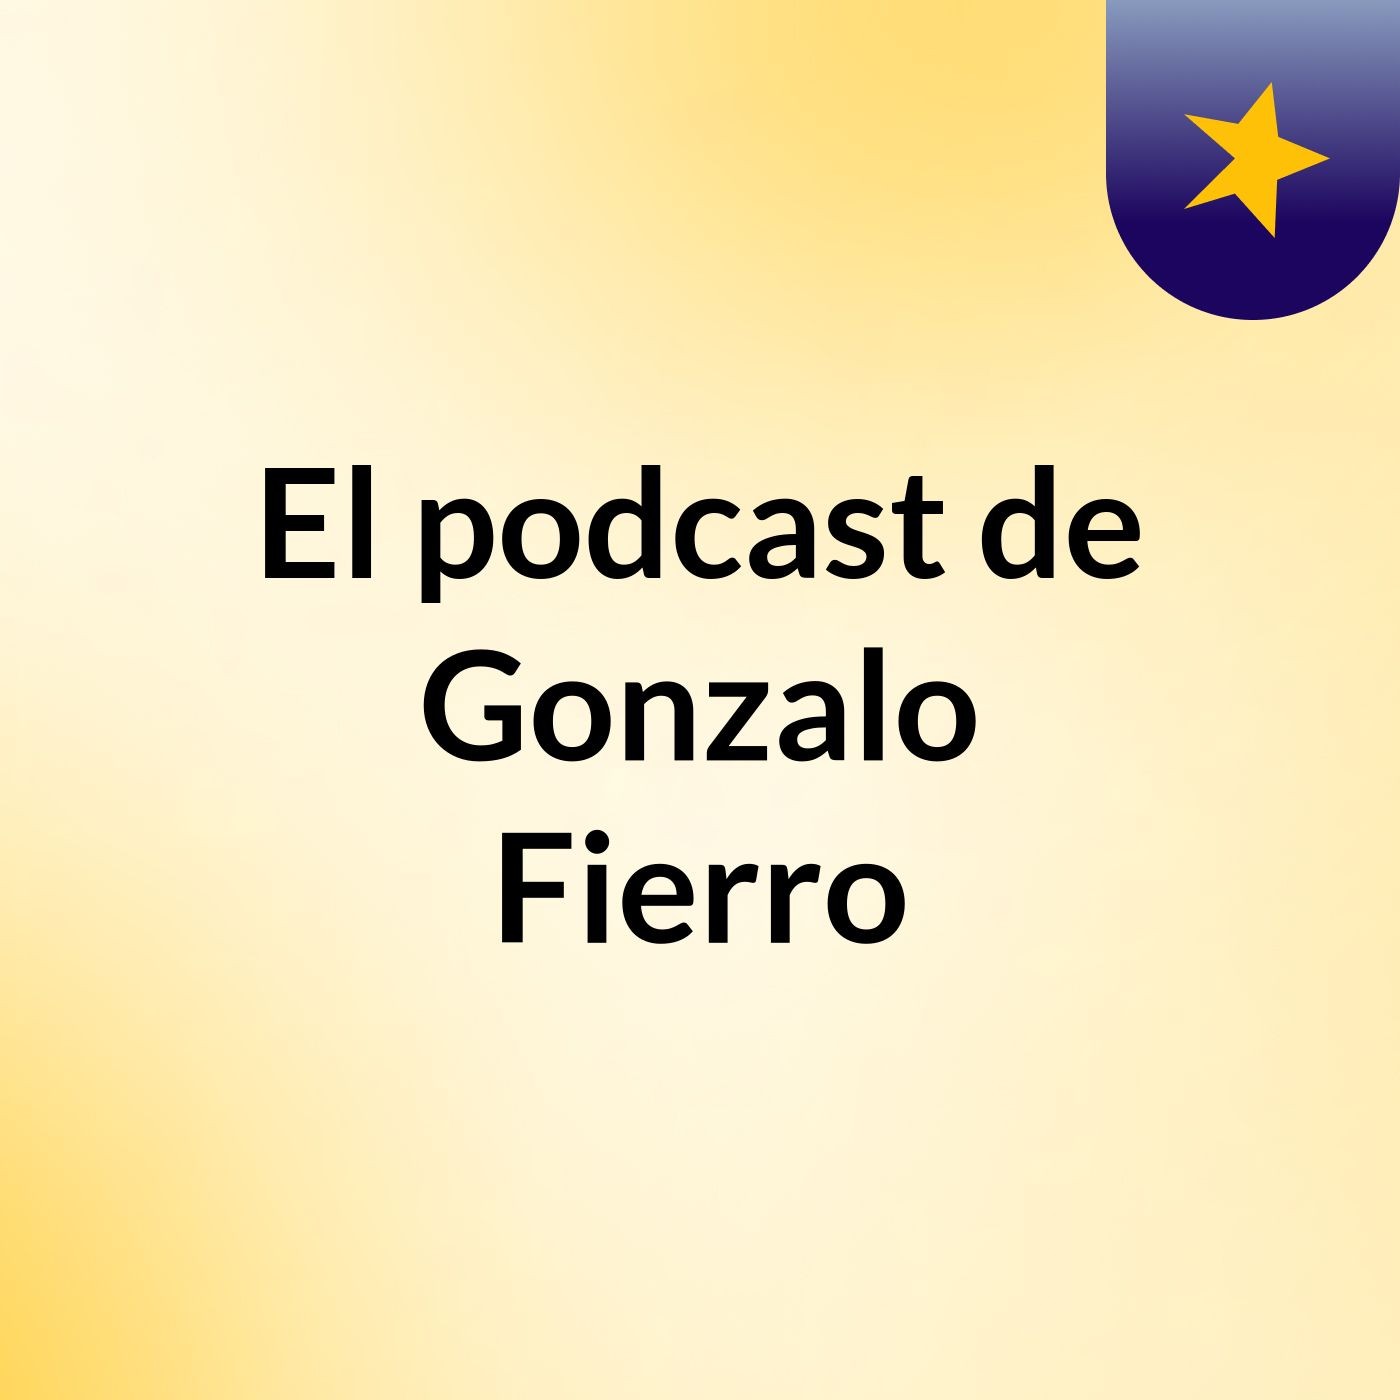 El podcast de Gonzalo Fierro